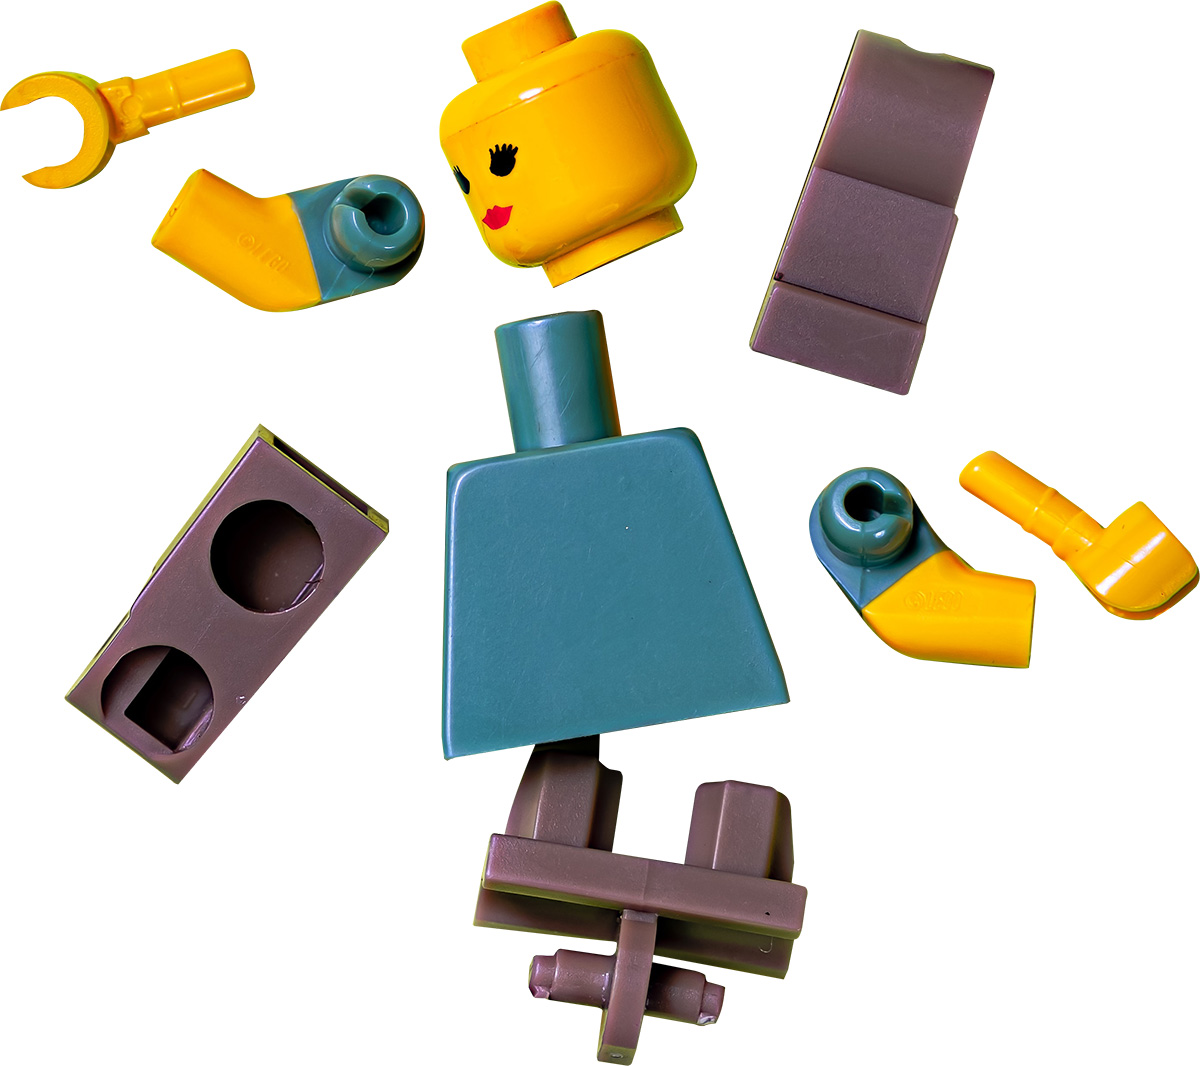 Lego-Figur die in einzelnen Teilen zerlegt wurde